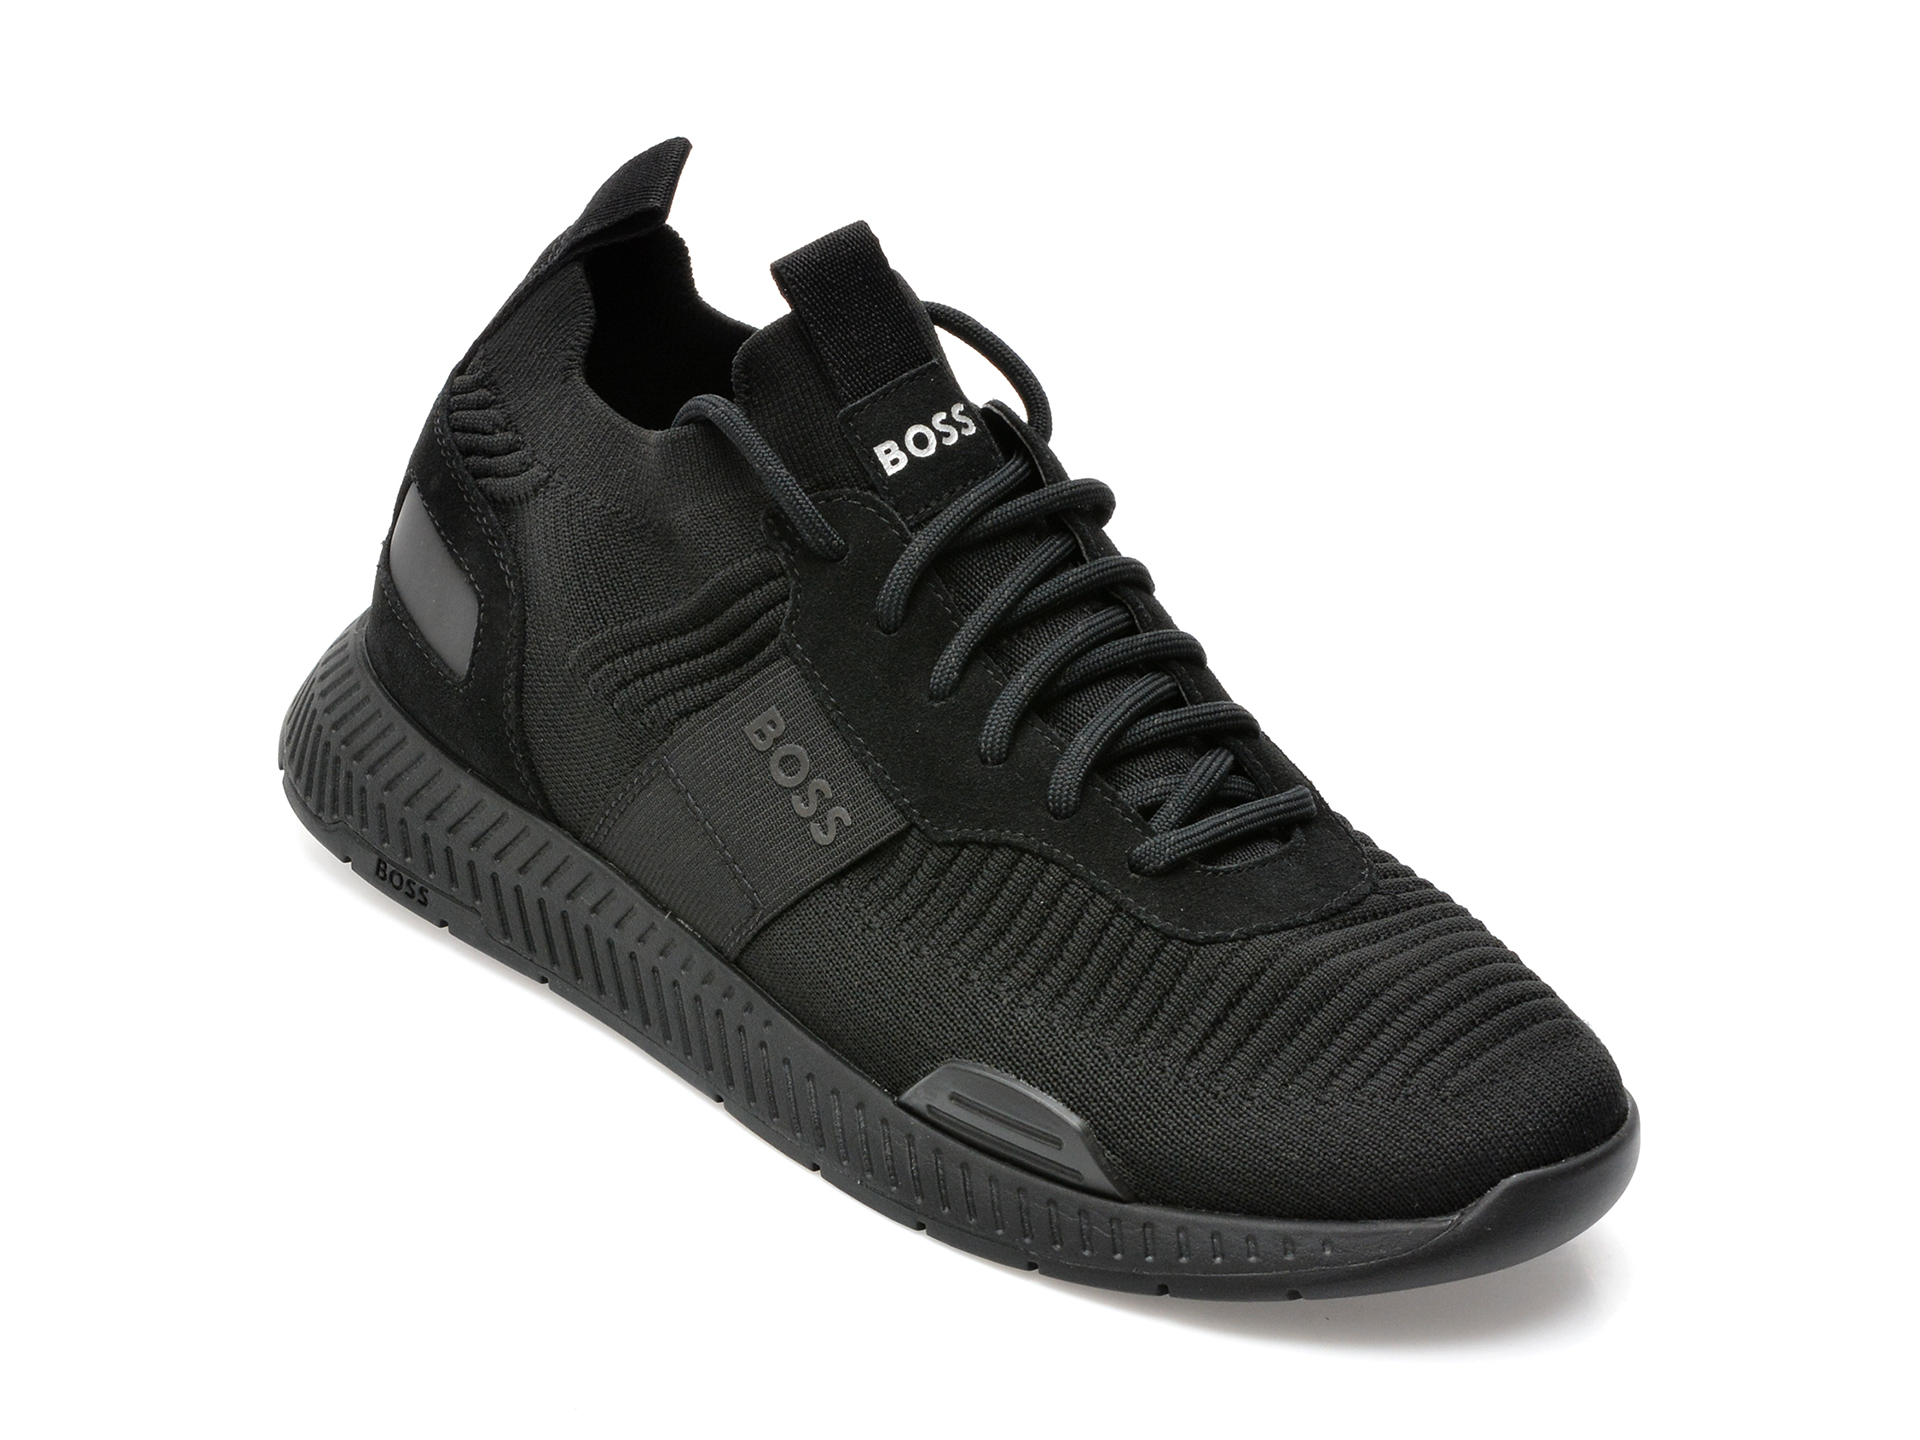 Pantofi sport HUGO BOSS negri, 596, din material textil si piele naturala /barbati/pantofi /barbati/pantofi